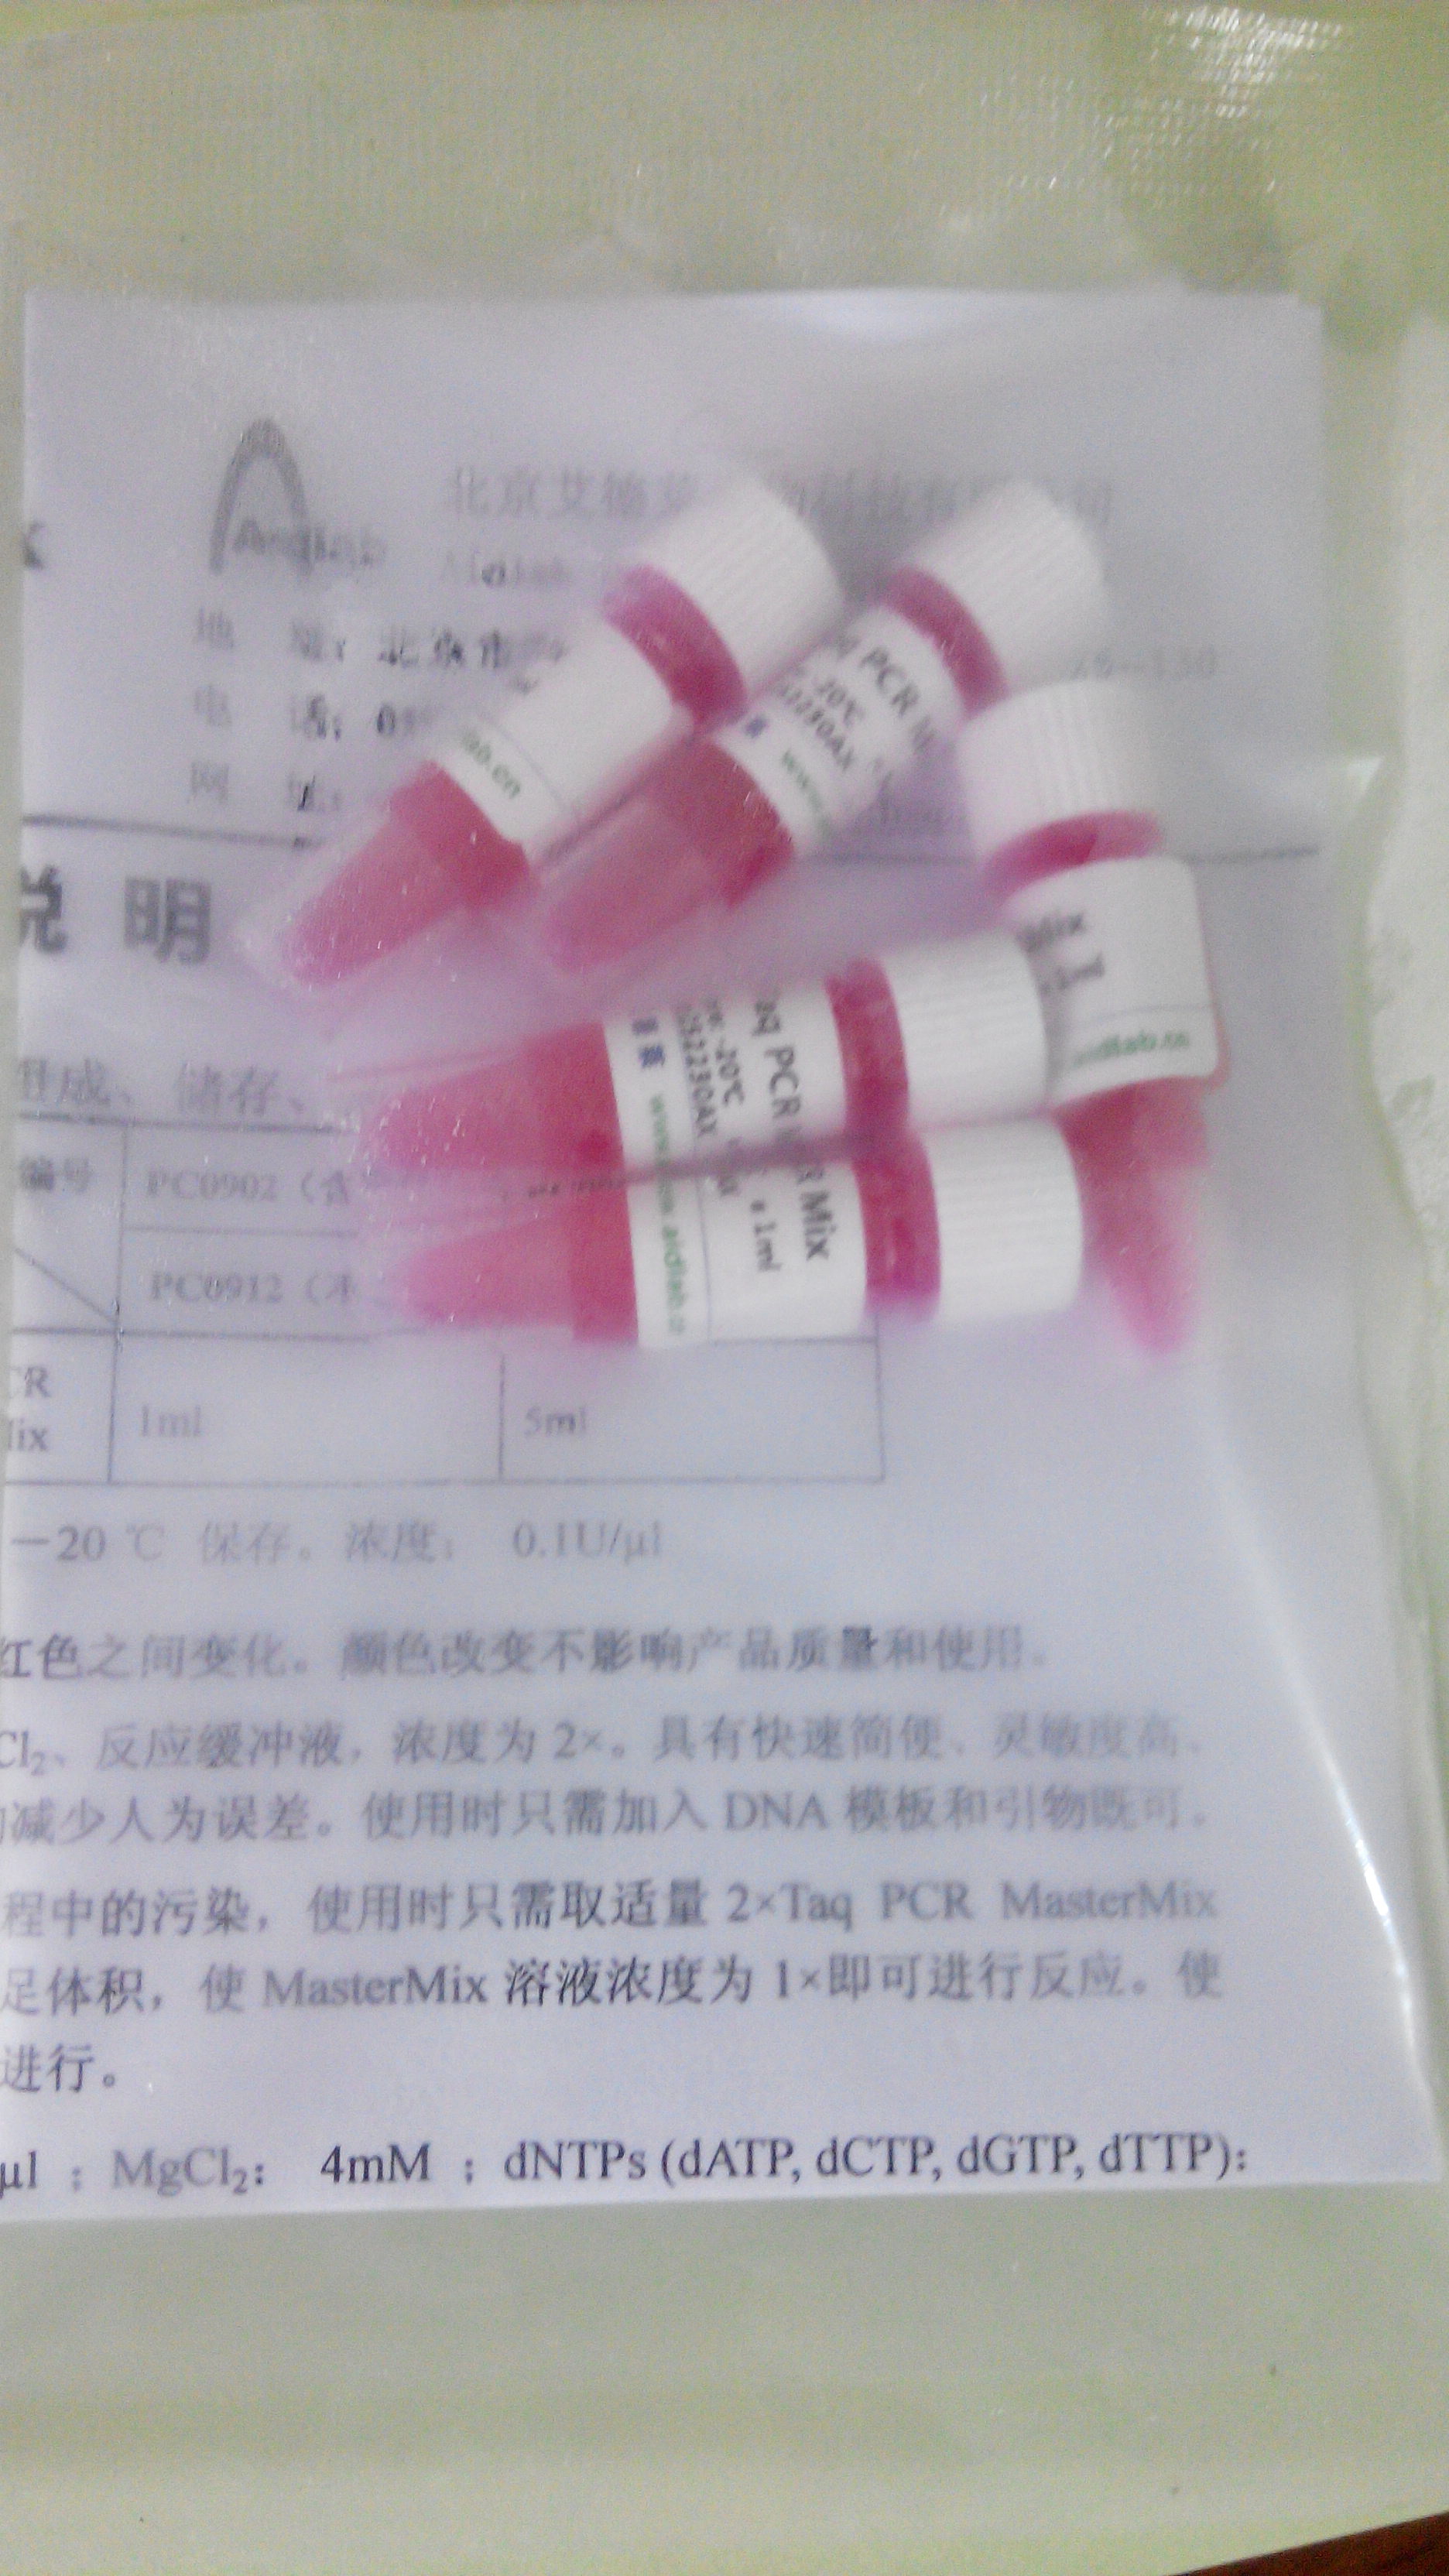 2×Taq PCR MasterMix